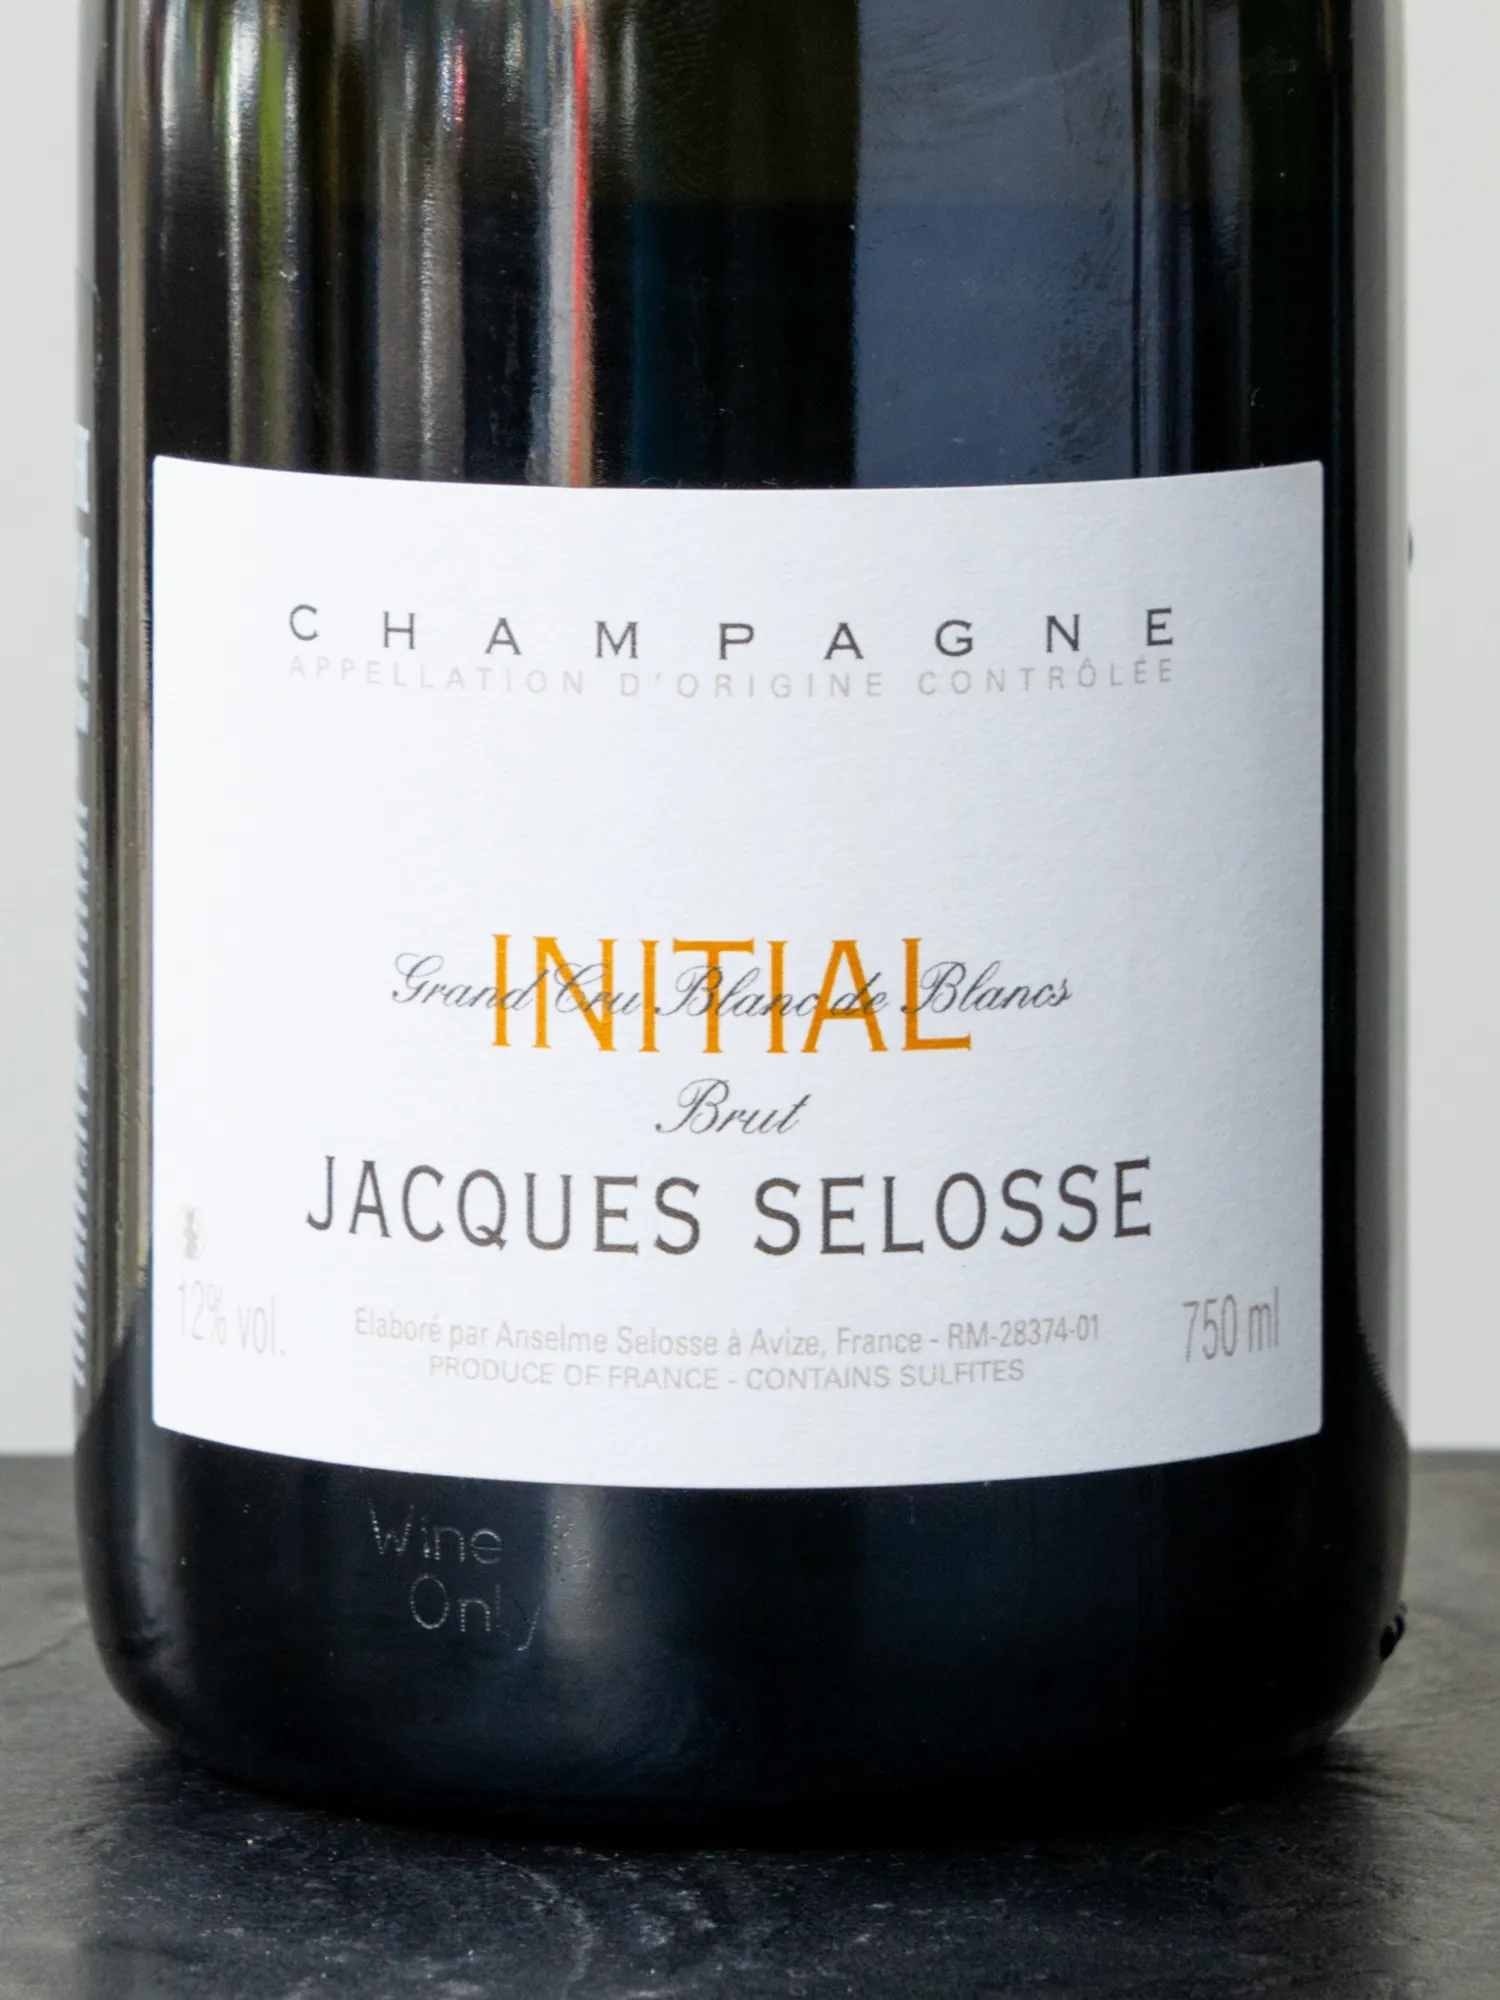 Шампанское Jacques Selosse Initial Grand Cru Blanc de Blancs Brut / Жак Селосс Брют Инисьяль